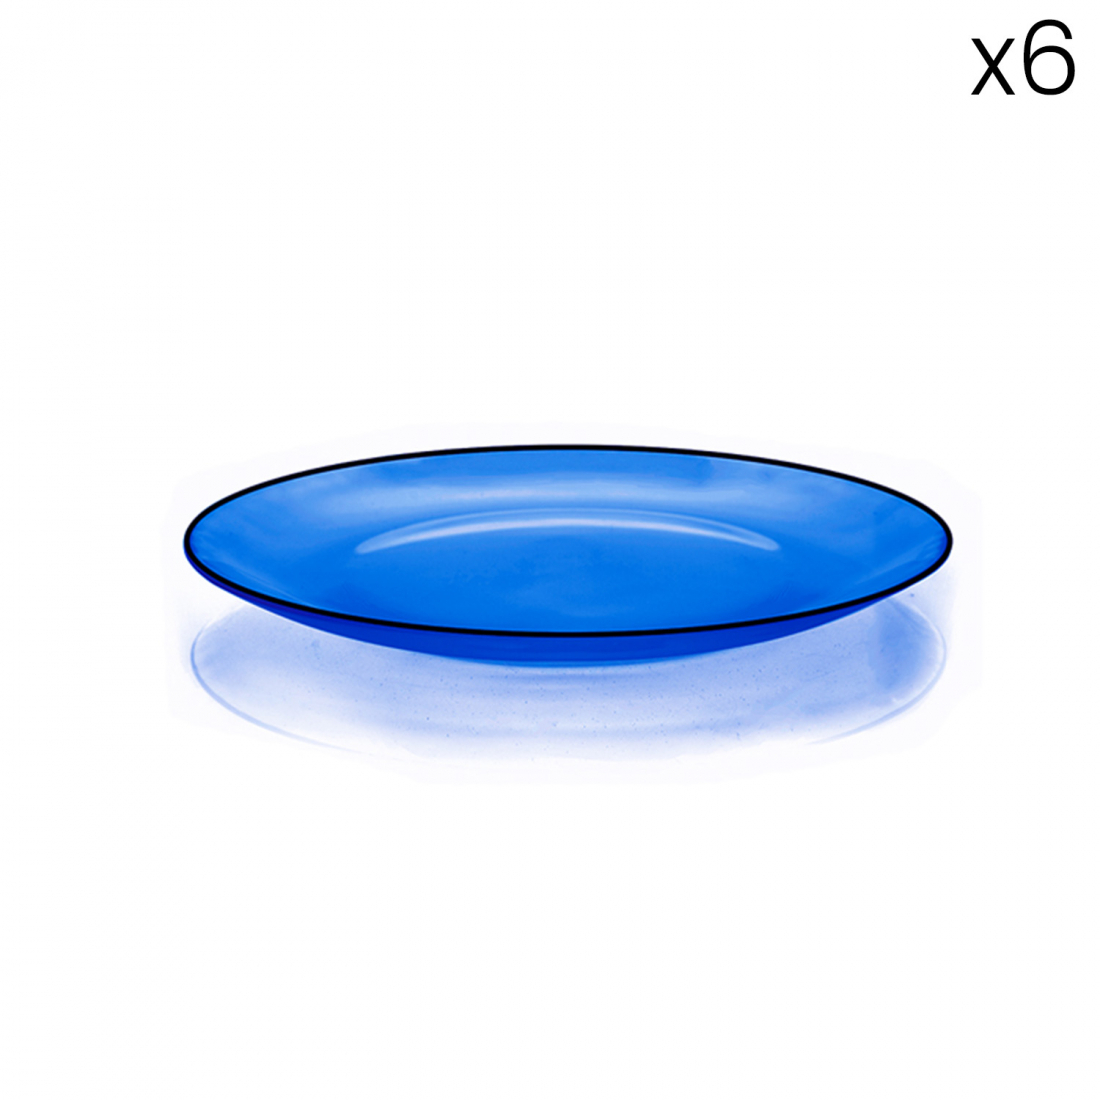 6 Glass Dessert Plates - Blue